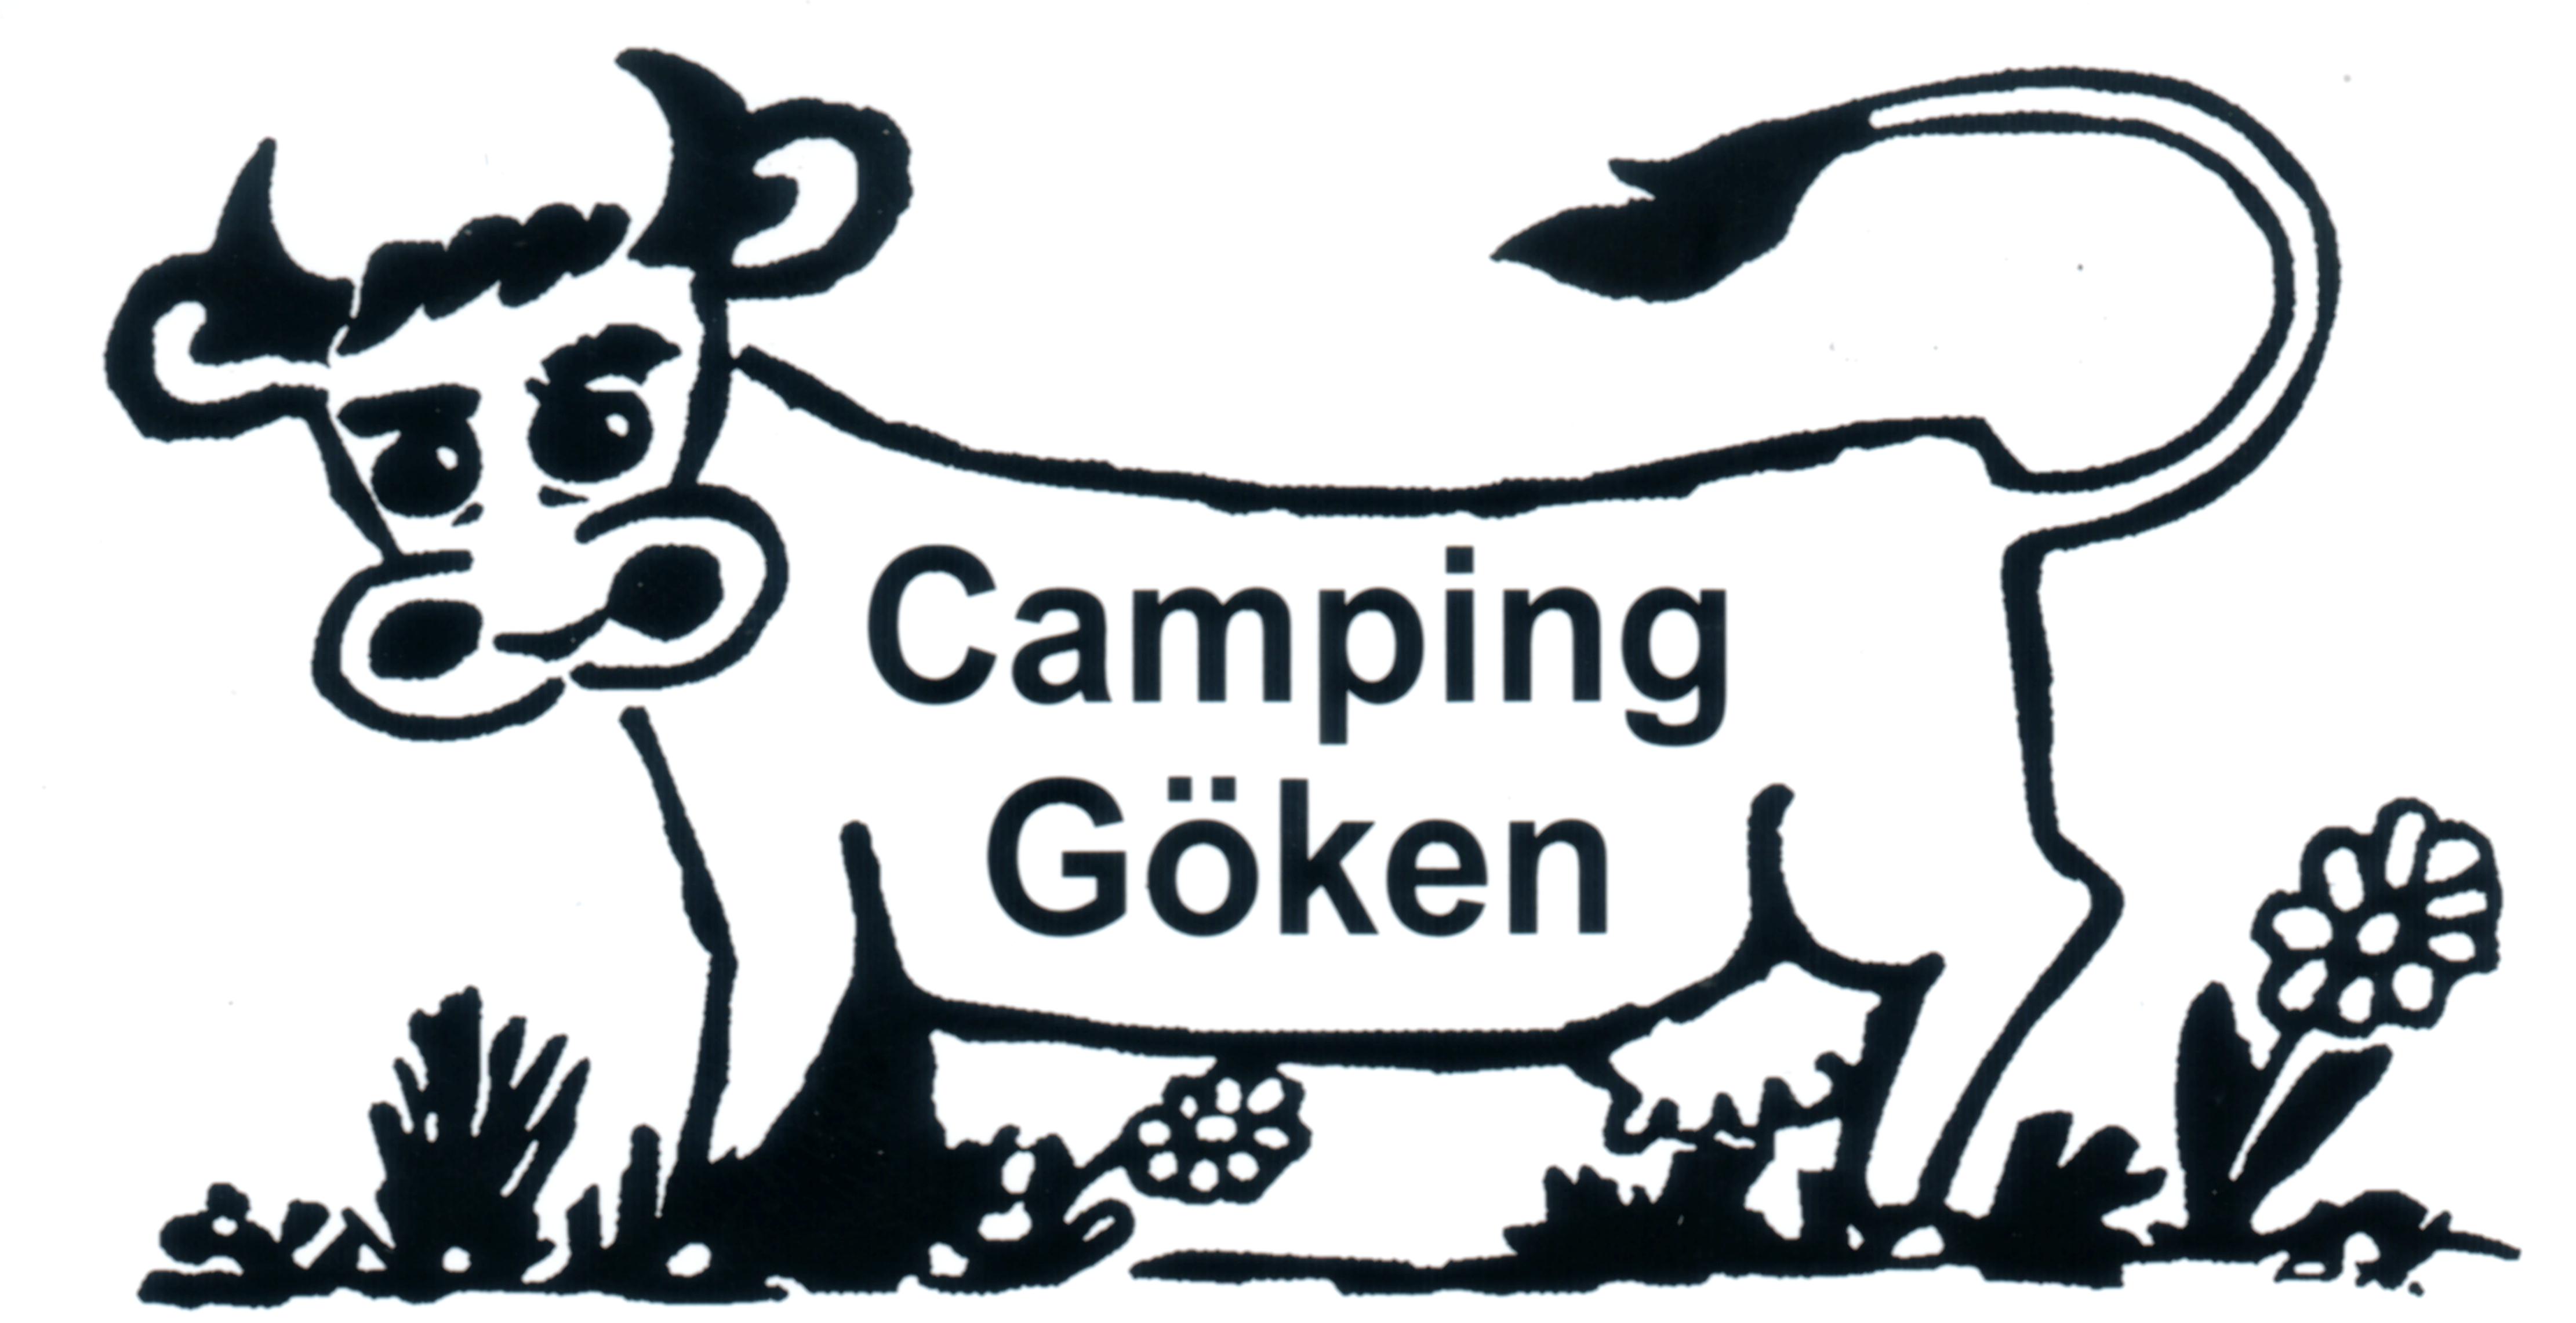 (c) Camping-goeken.de